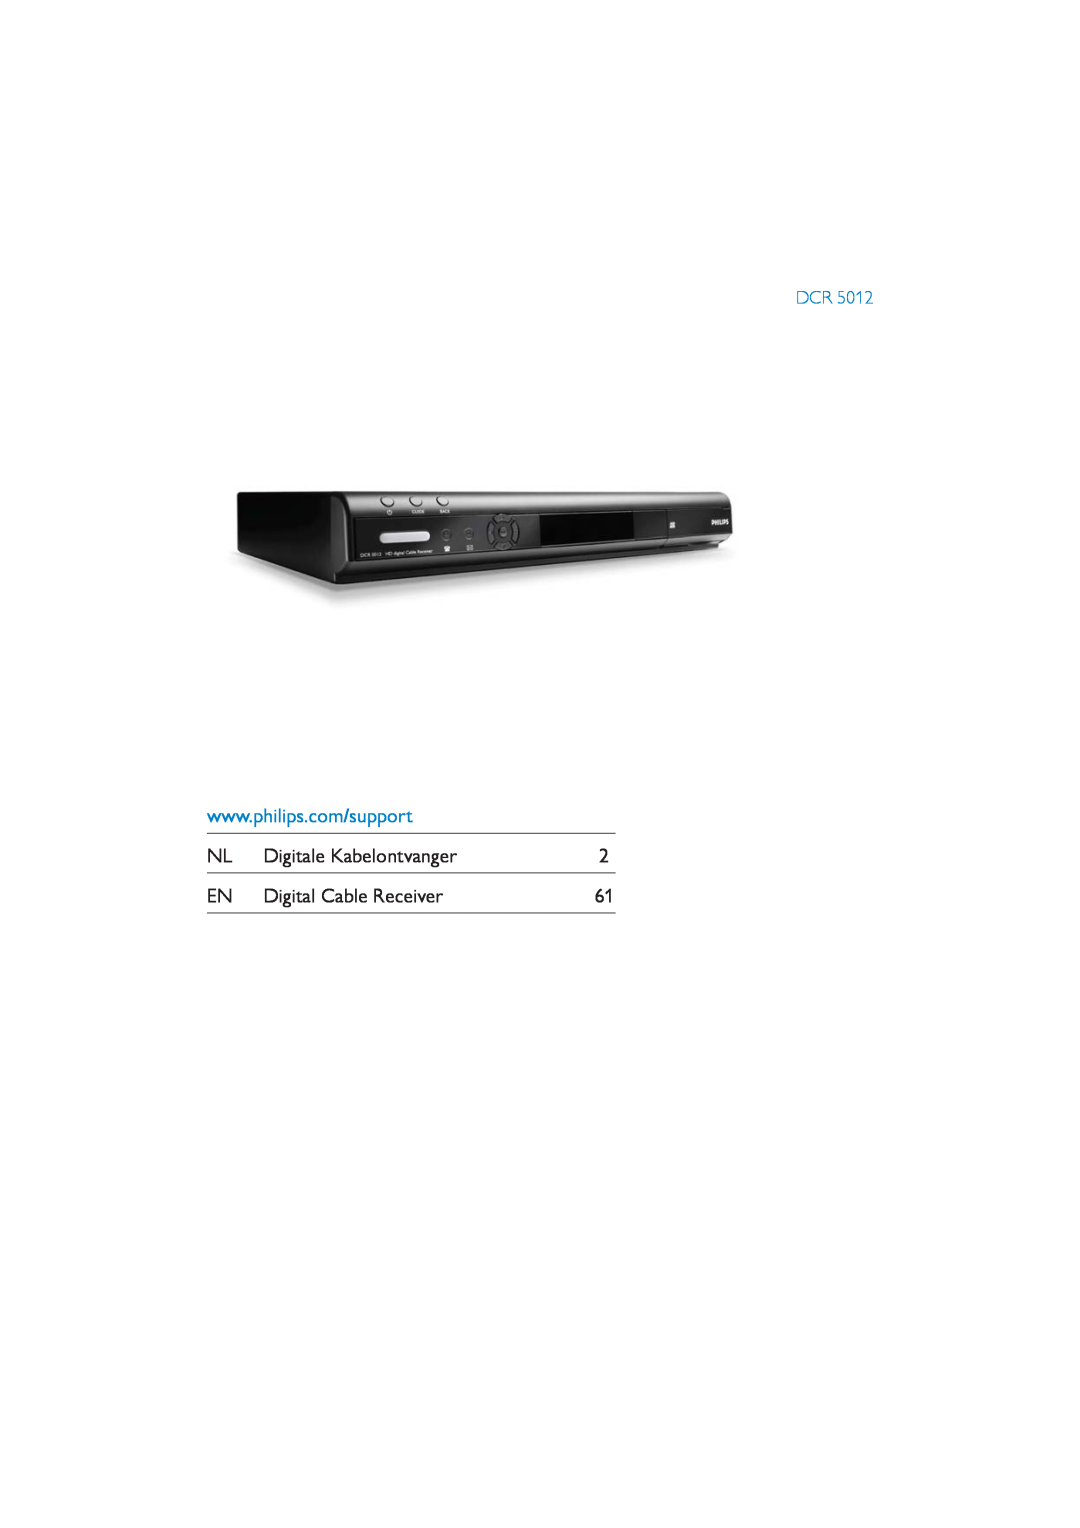 Philips DCR5012 manual Digitale Kabelontvanger, Digital Cable Receiver 